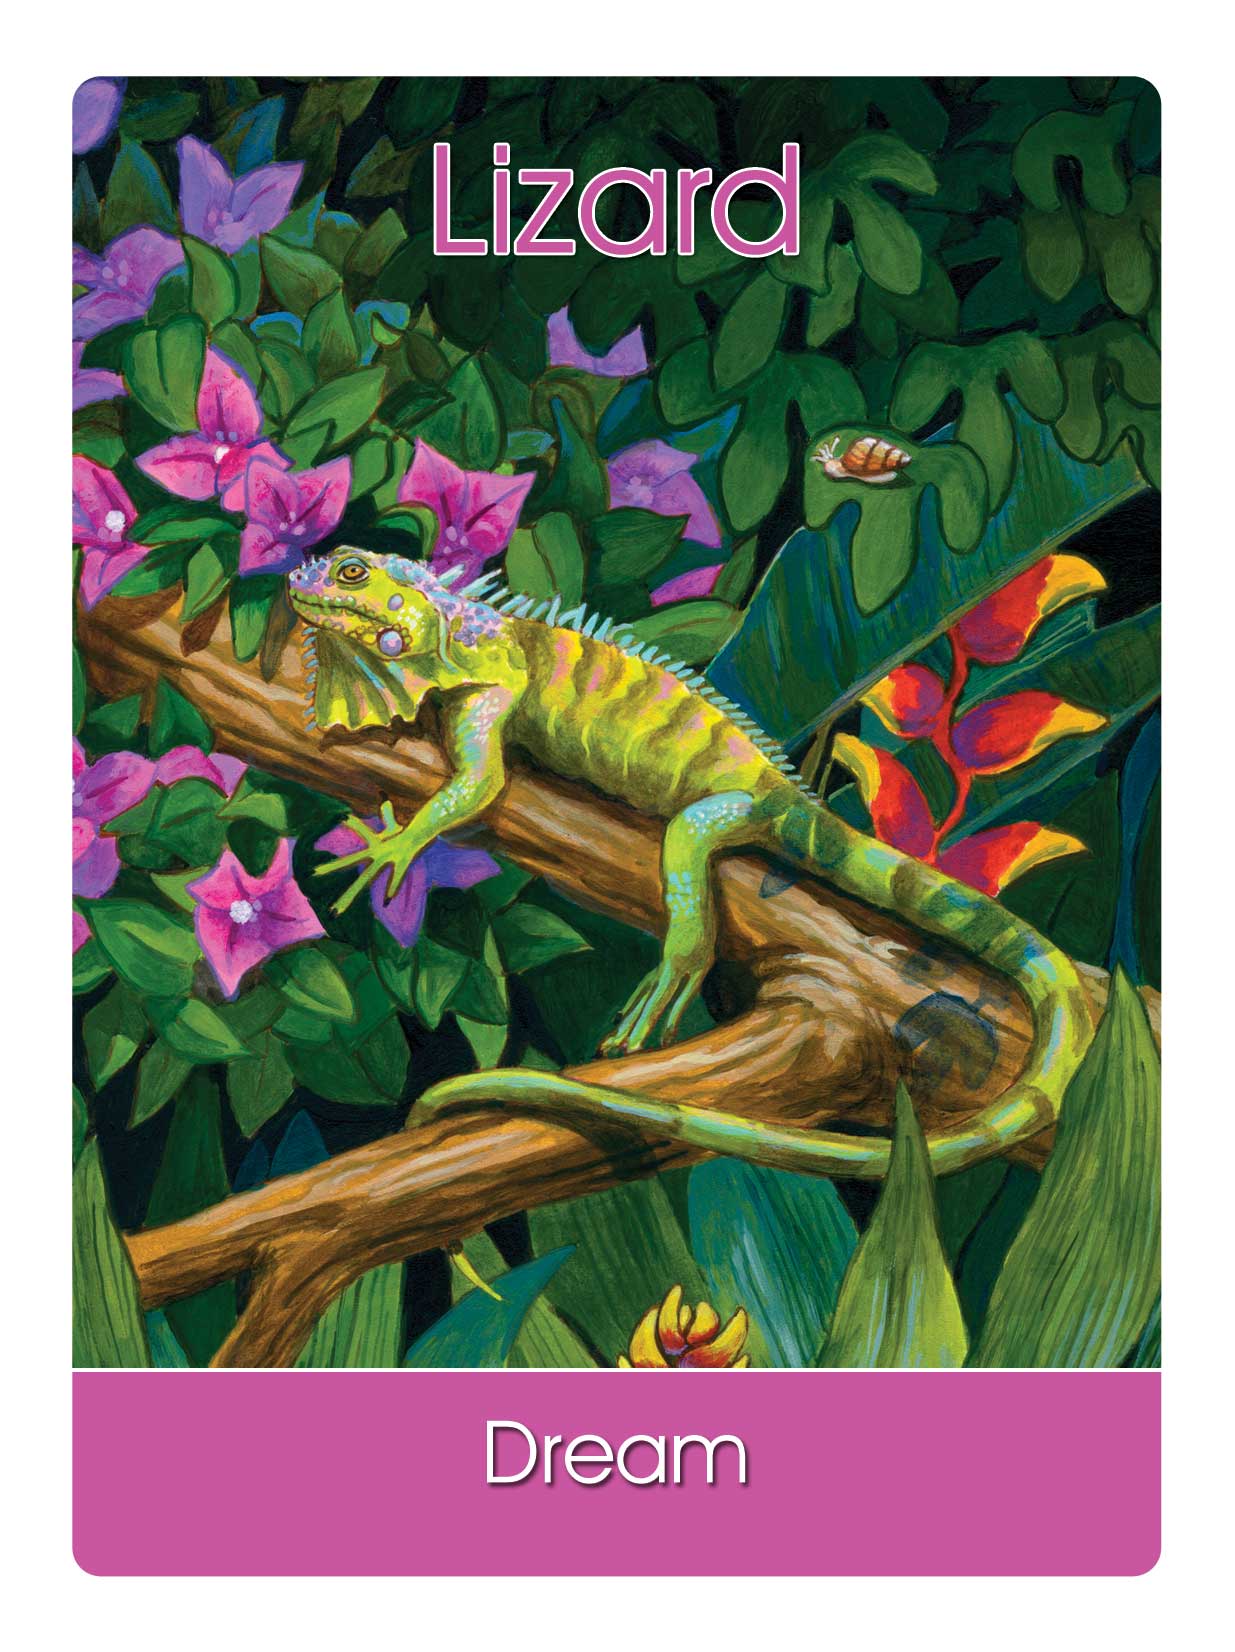 17) Lizard Spirit Says: “Dream” - Dr. Steven Farmer